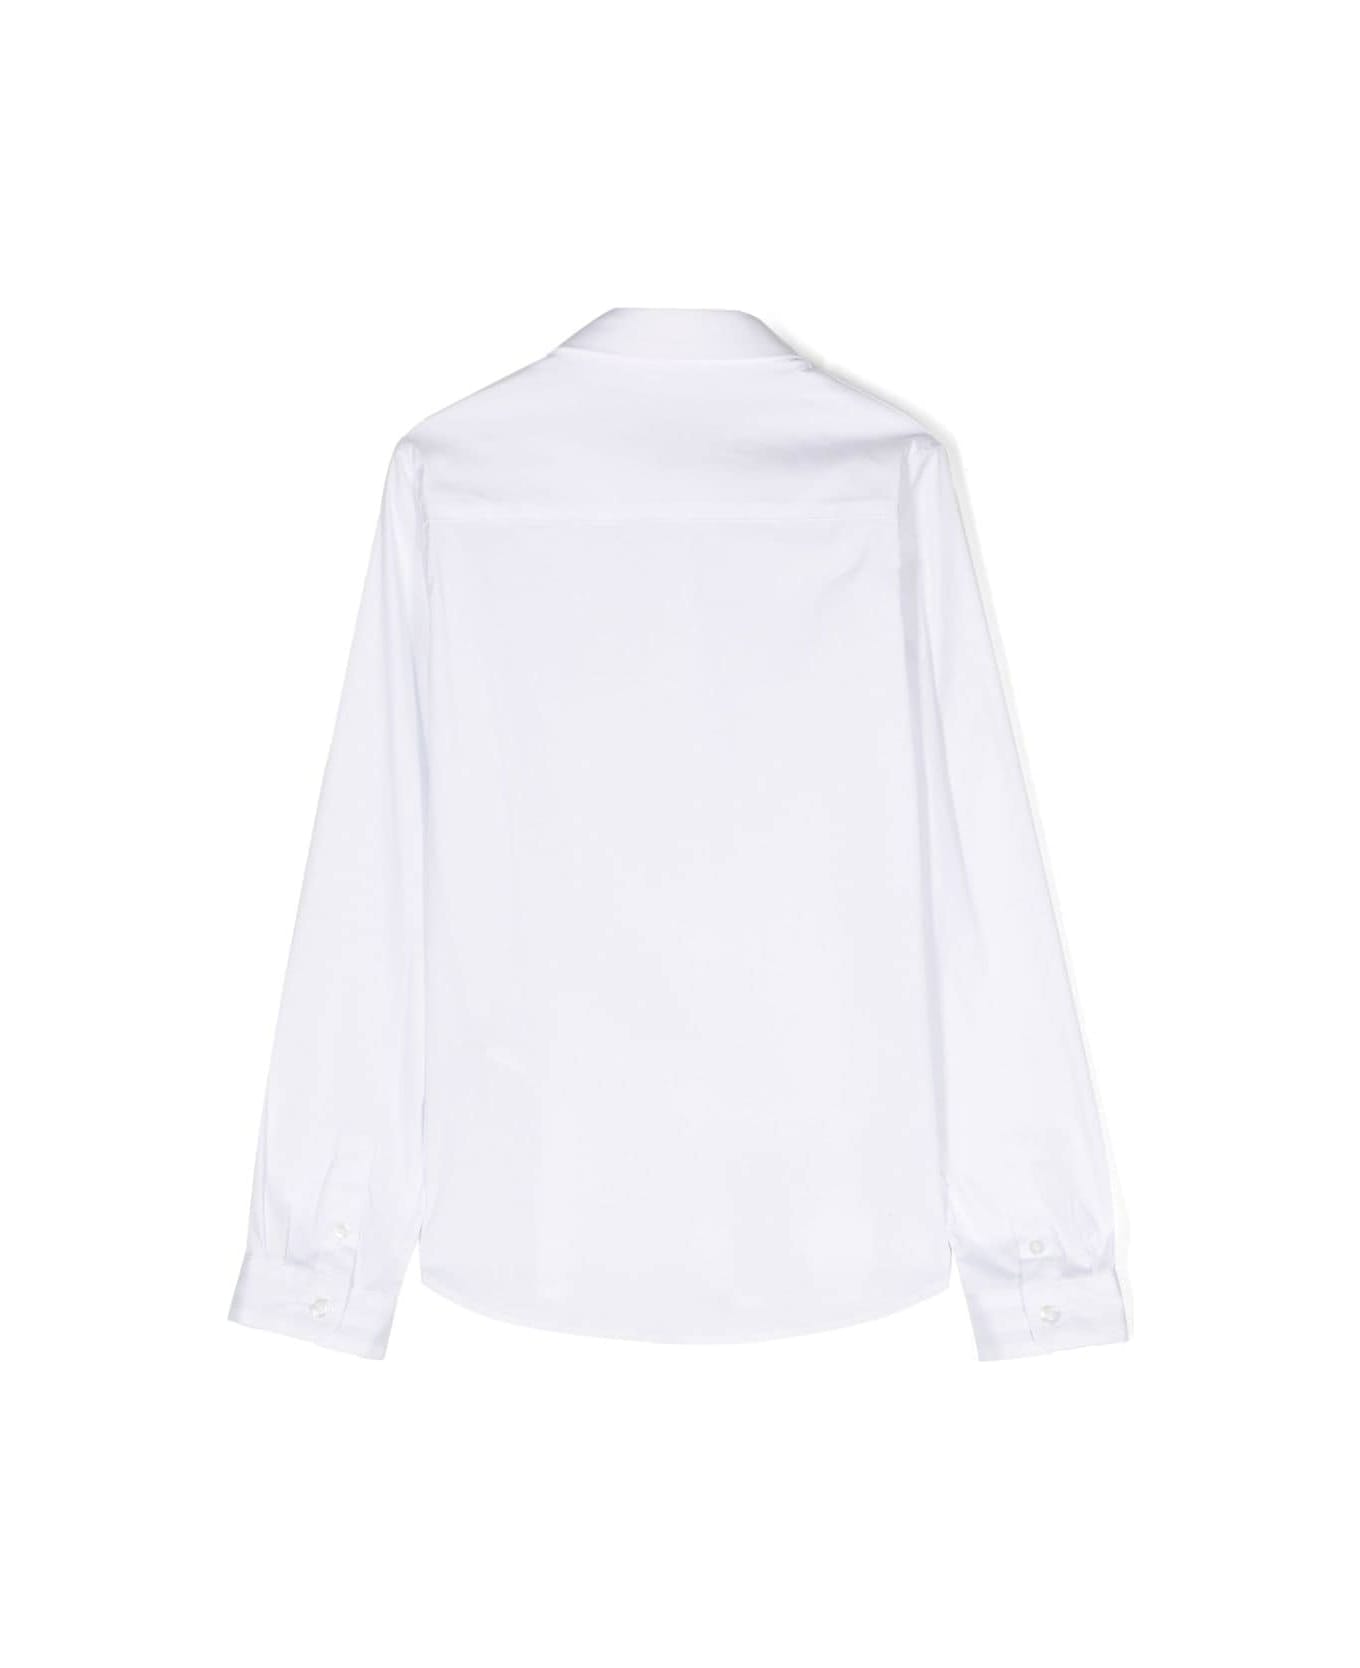 Hugo Boss Camicia Bianca In Misto Cotone Bambino - Bianco